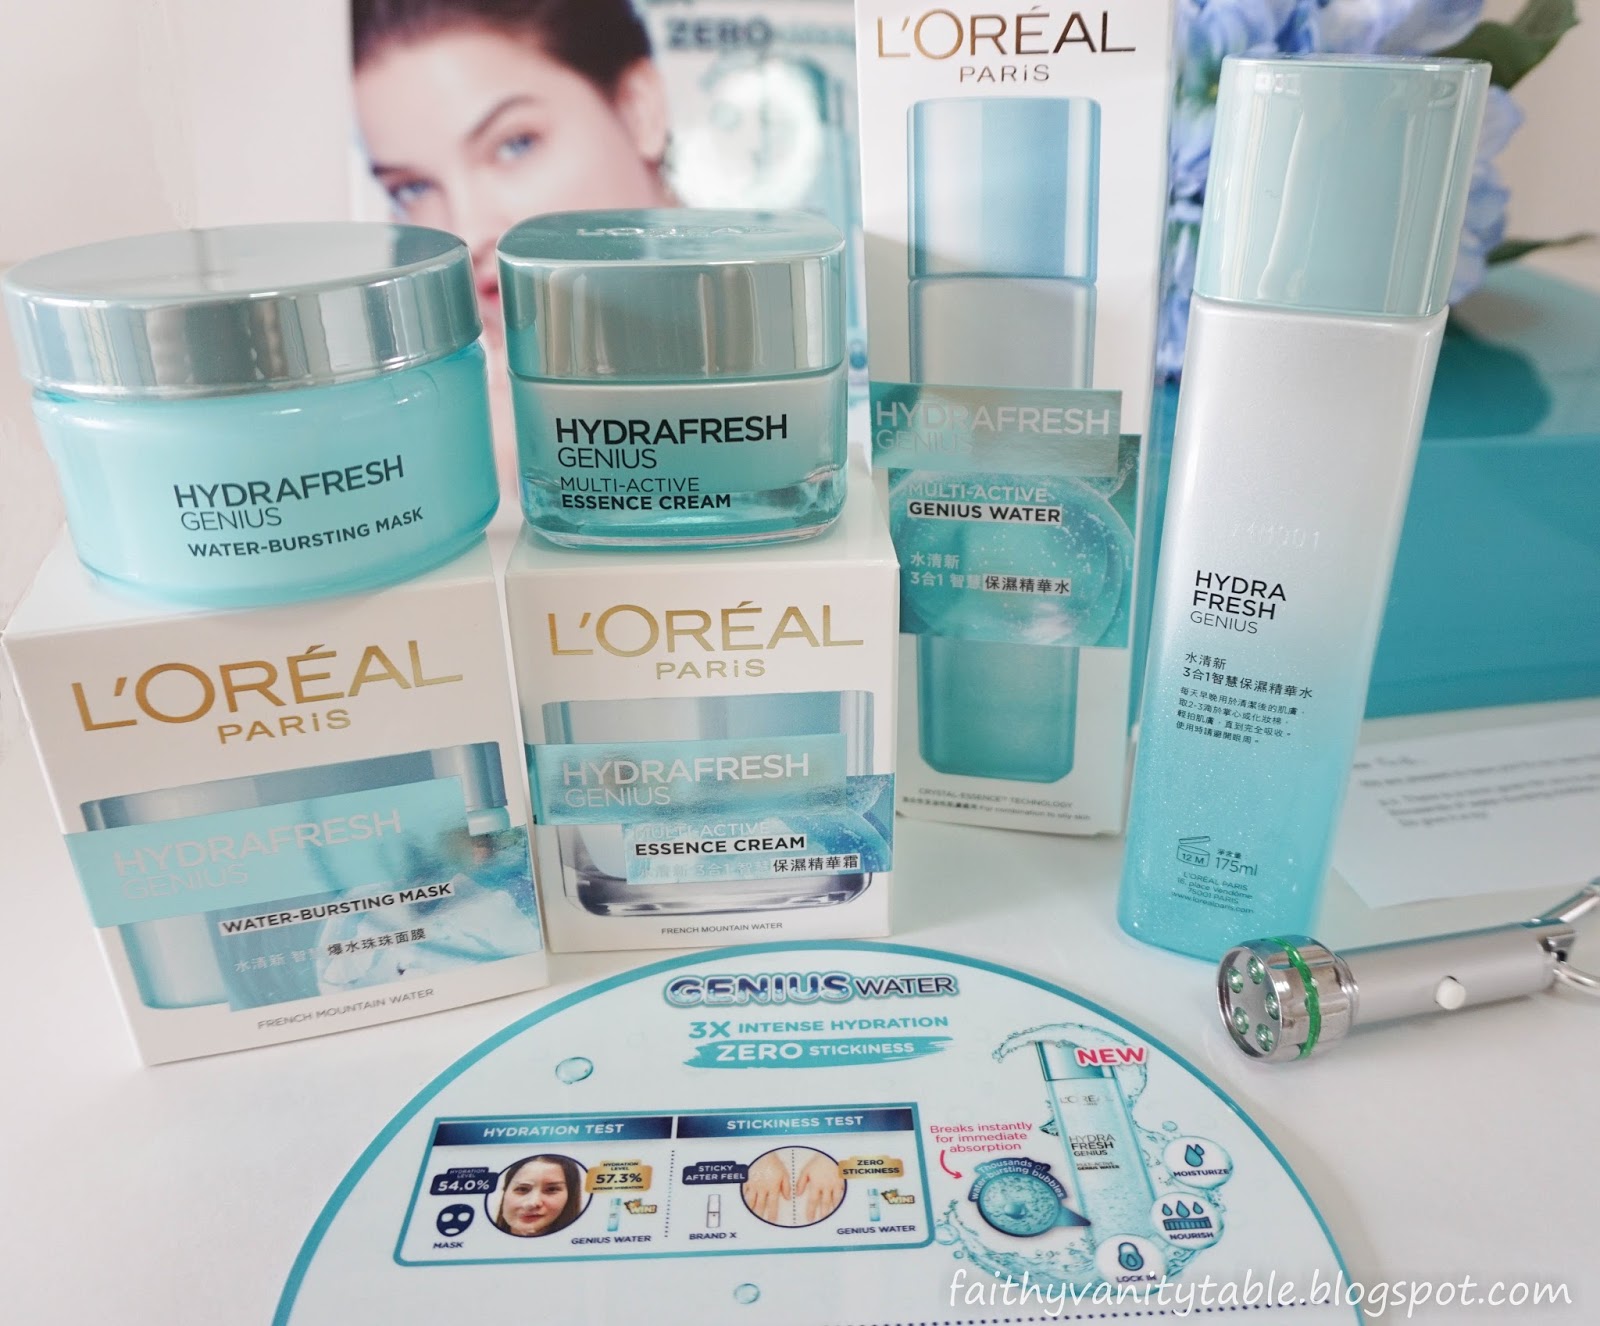 Singapore Beauty, Travel and Lifestyle Blog: Review of L'Oréal Paris ...